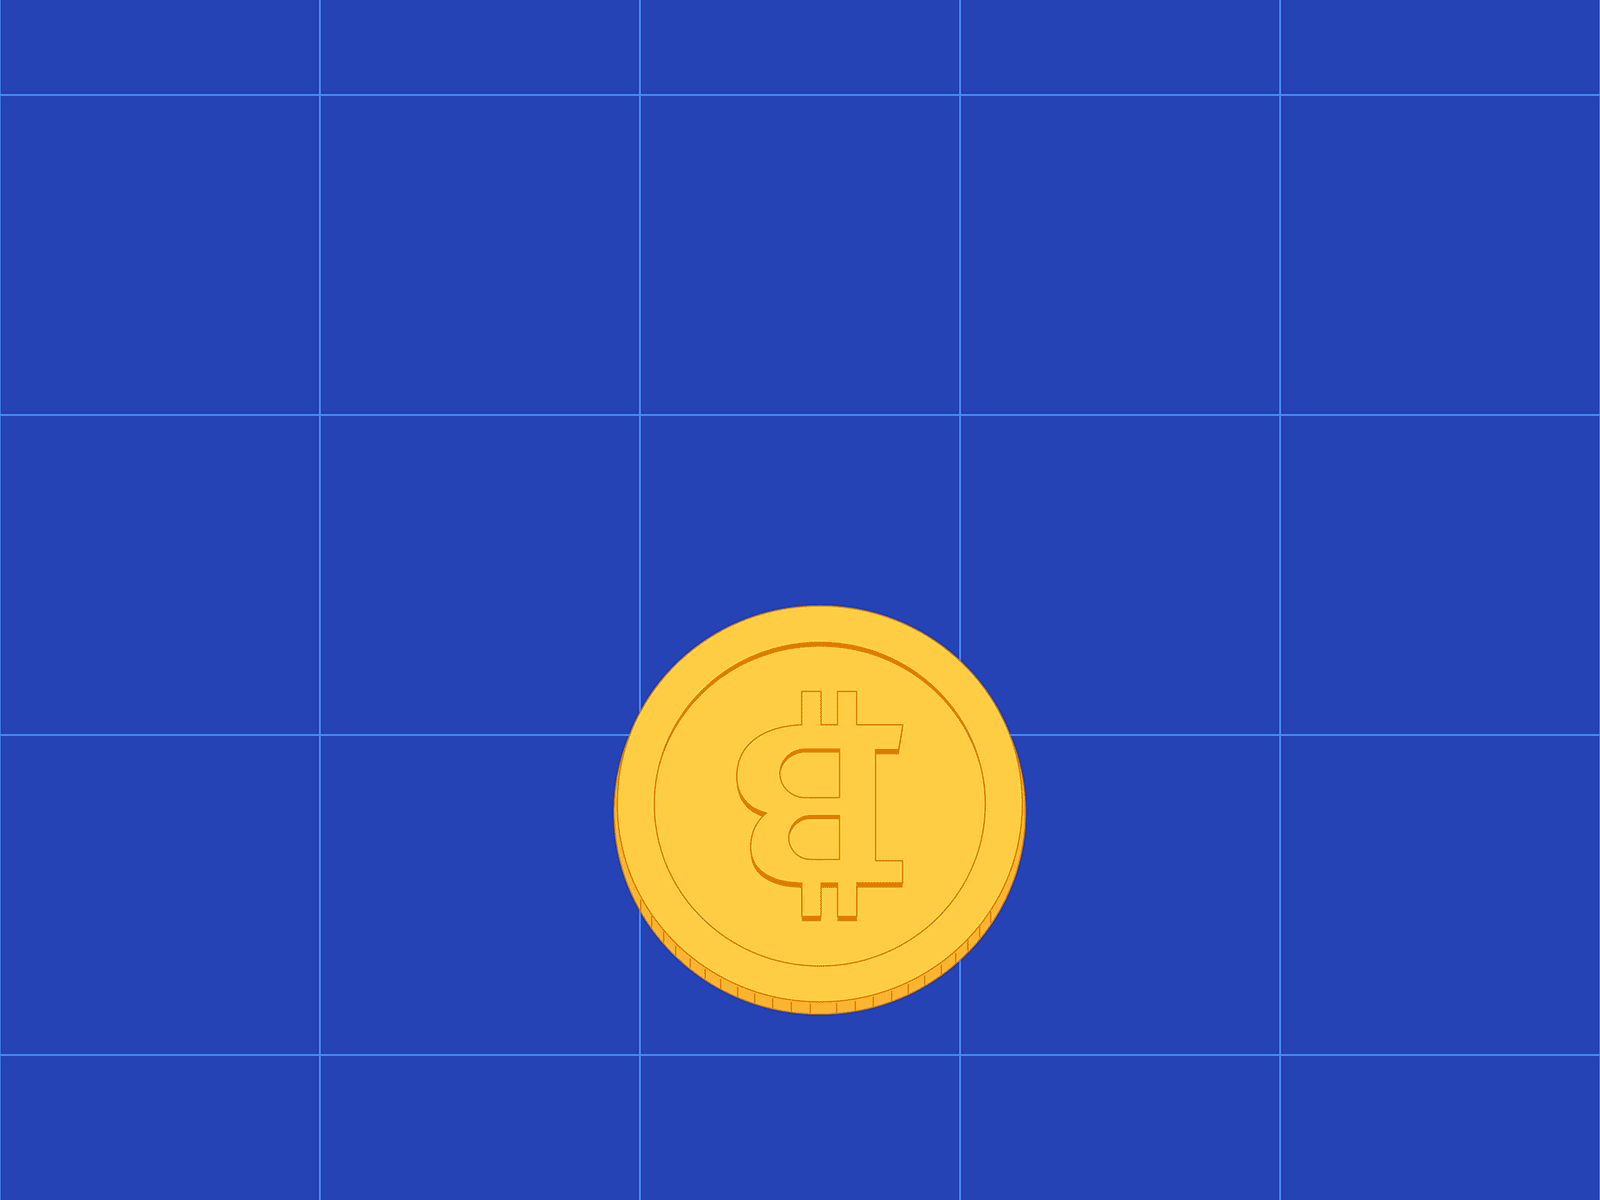 Coin 2d animation bitcoin coin design gif graphic design illustration vector vectorgif